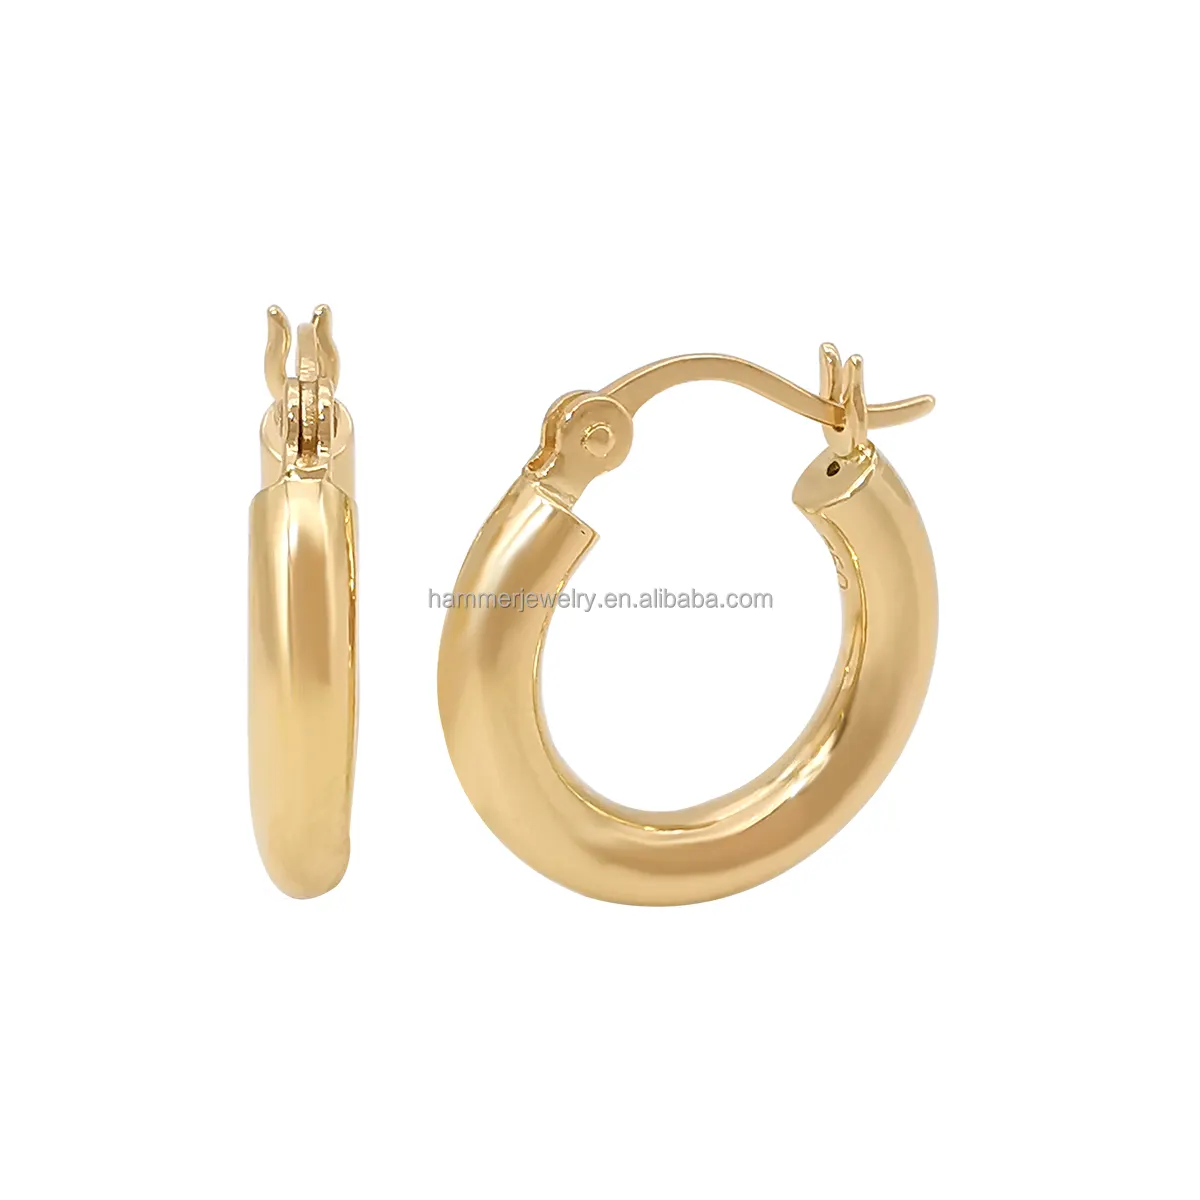 Pendientes de oro auténtico de 18k para mujer, aretes de círculo redondo de 16mm, 22mm y 26mm, diseño clásico, AU750